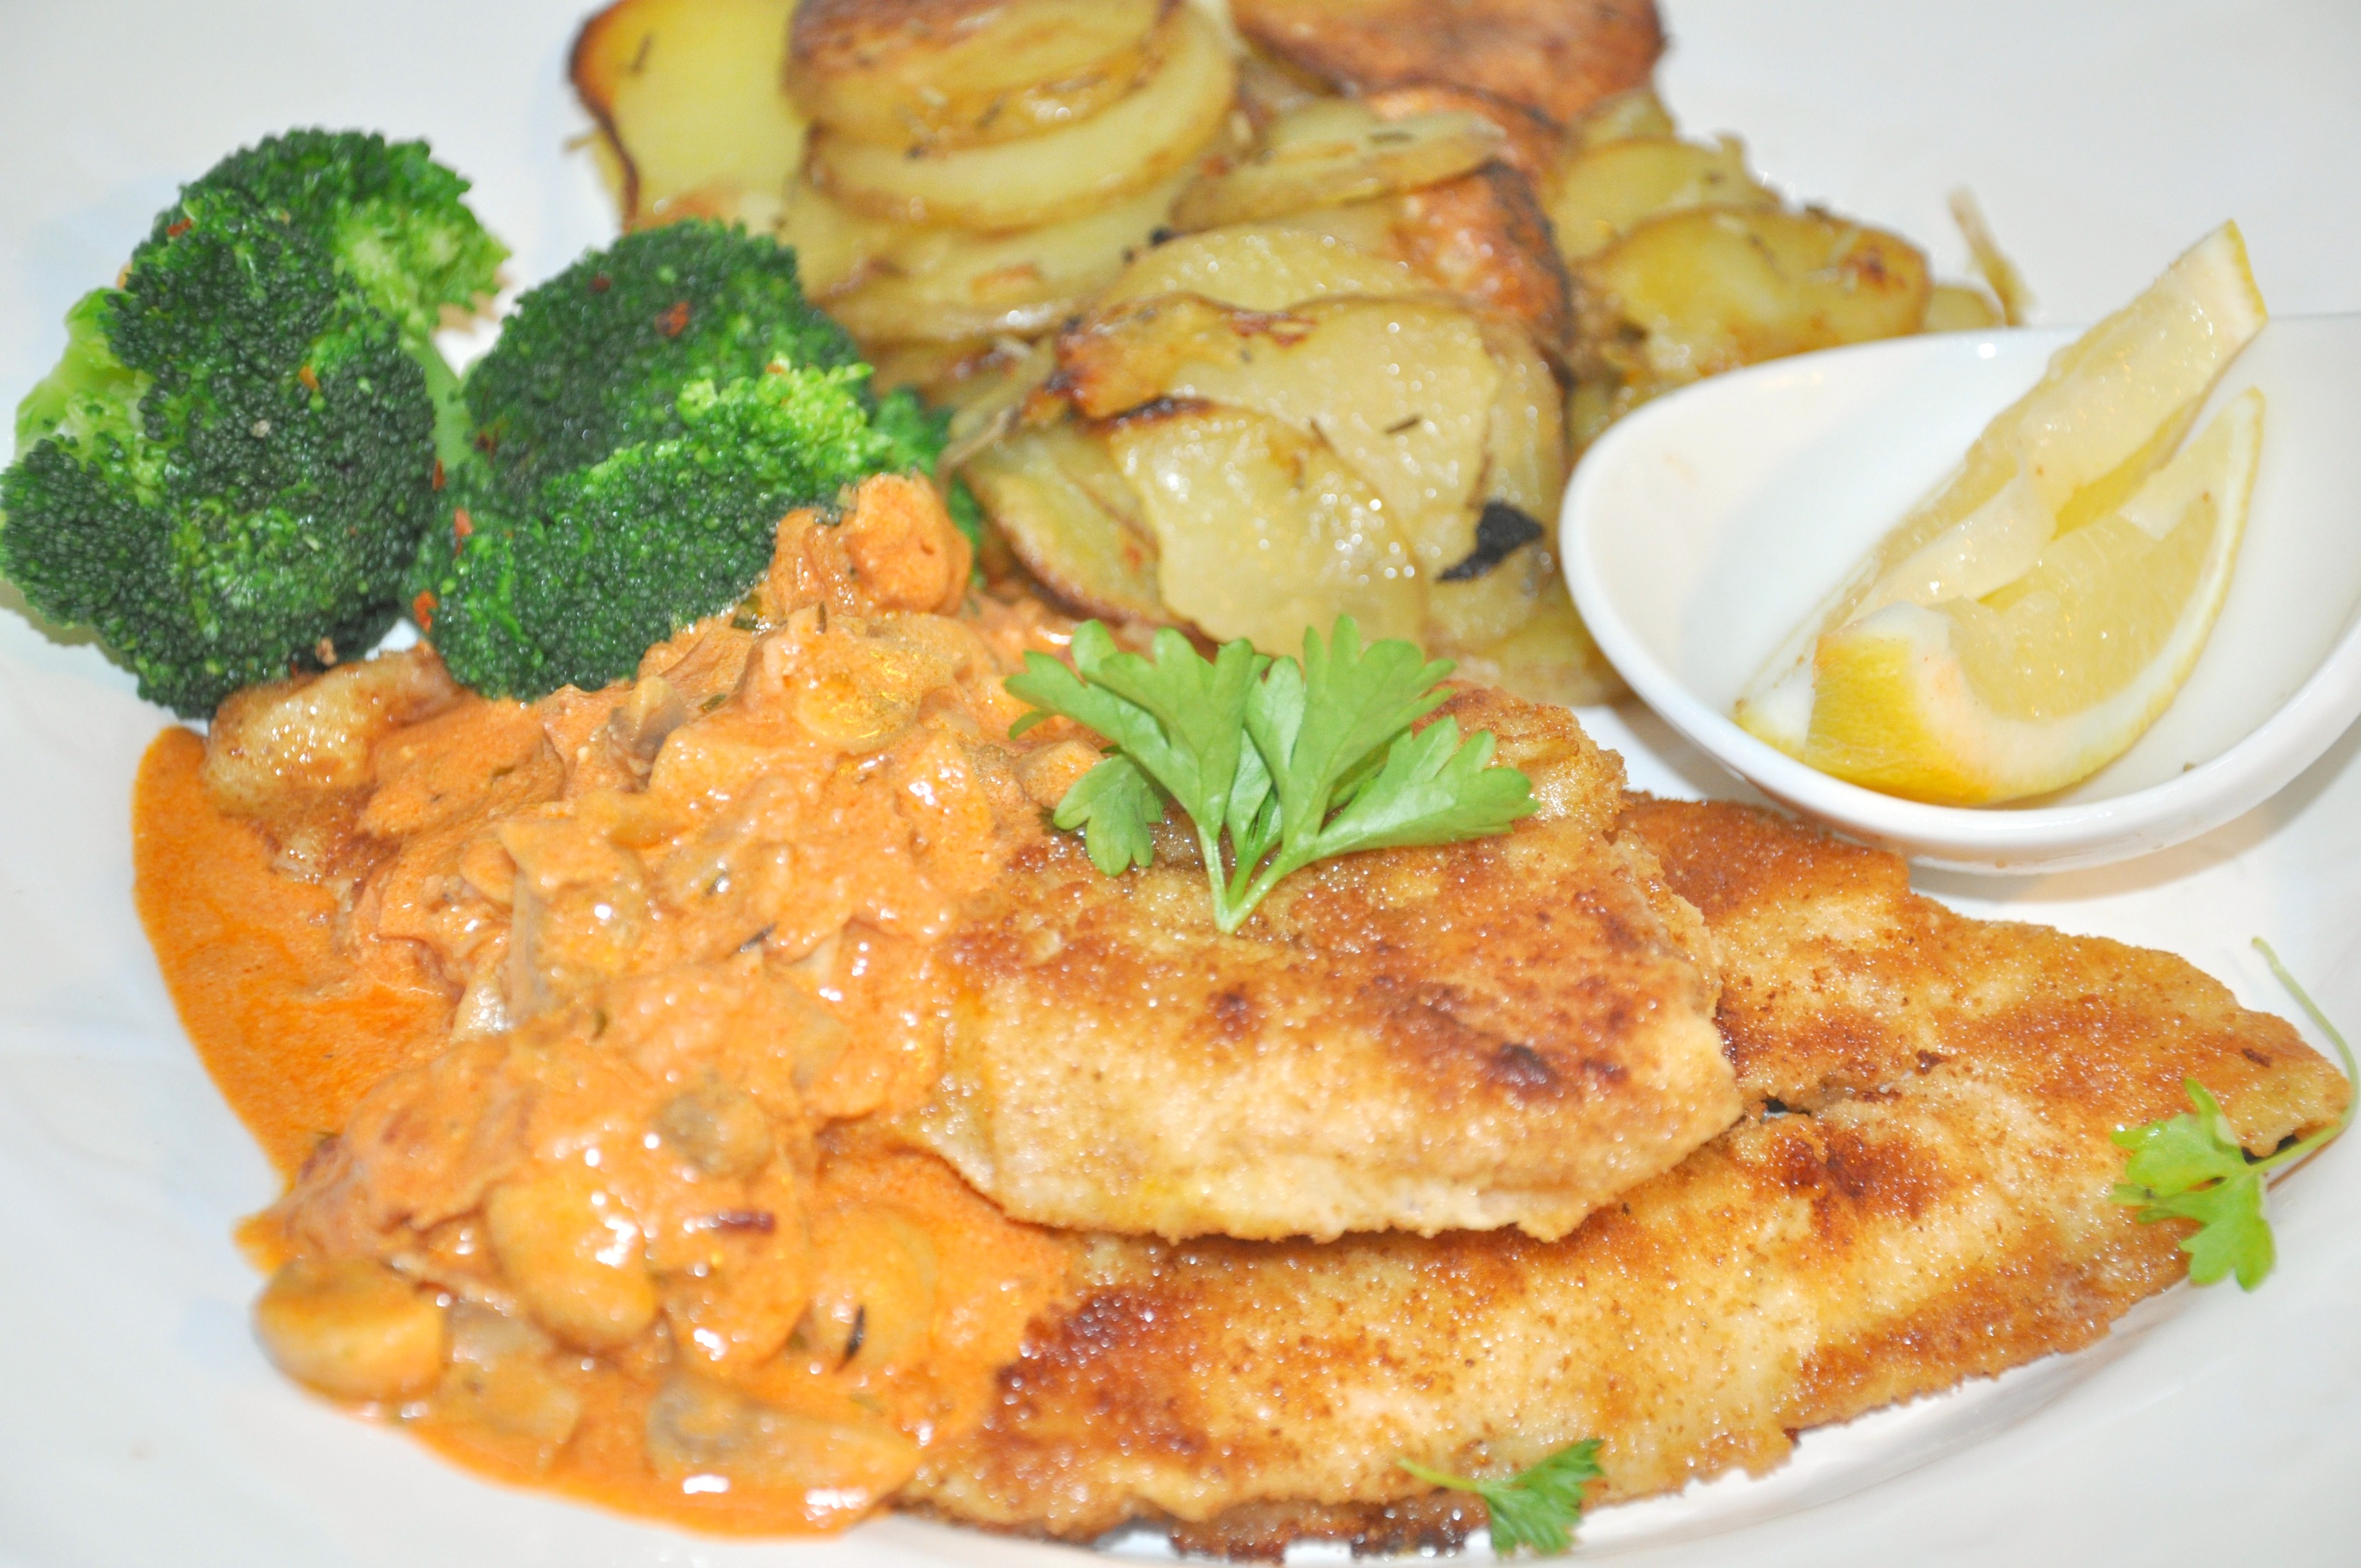 kycklingschnitzel-med-jagarsas-ugnsrostad-potatis-broccoli